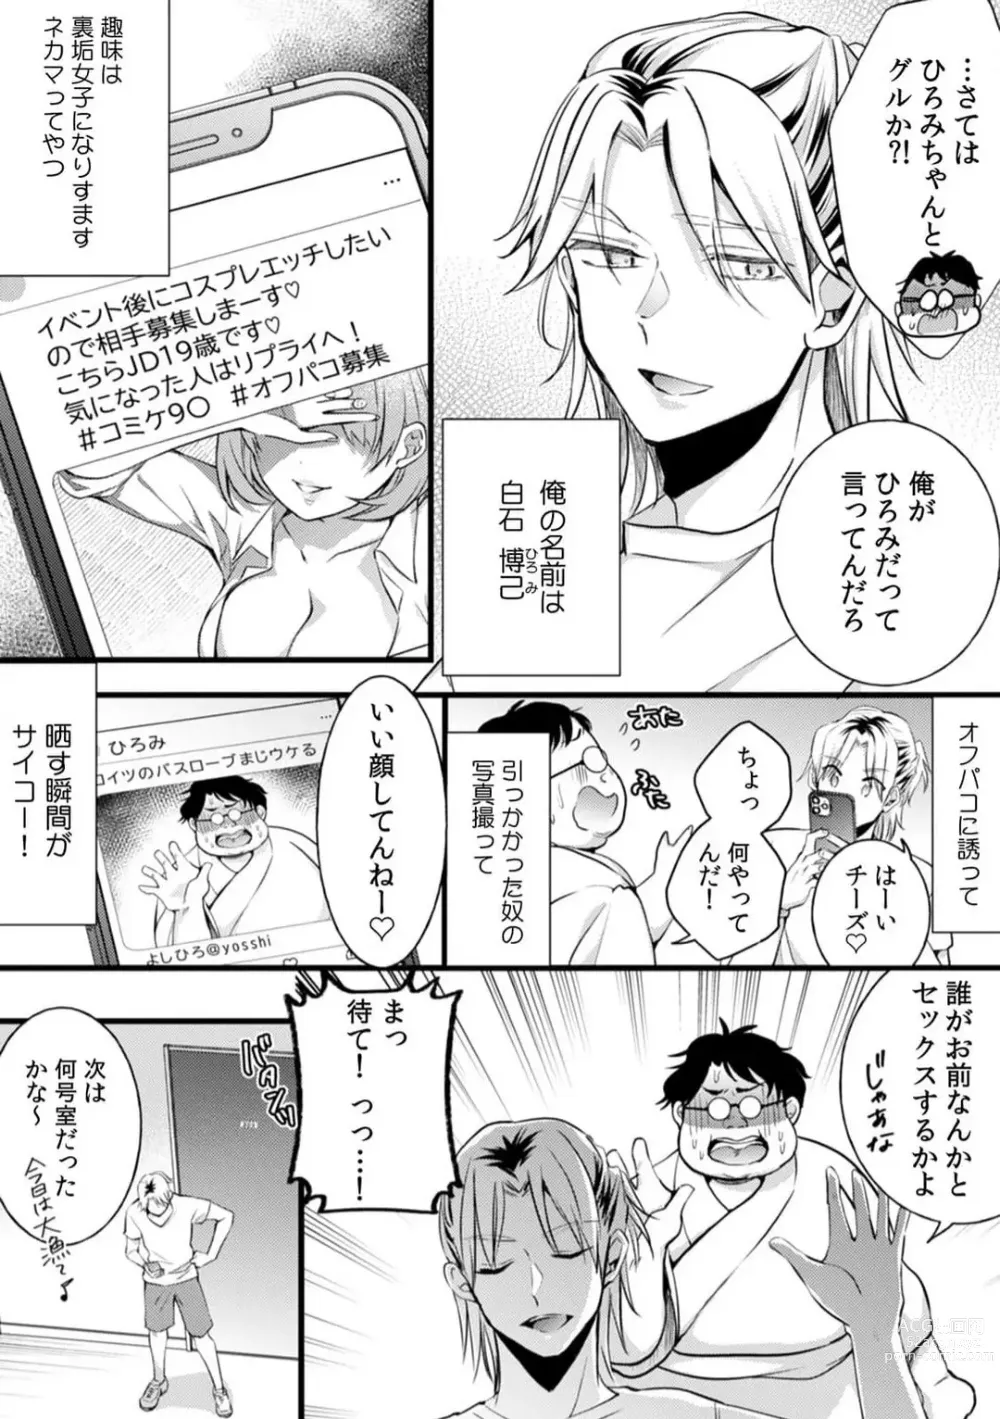 Page 4 of manga Ore no Naka de... Itte Kudasai...